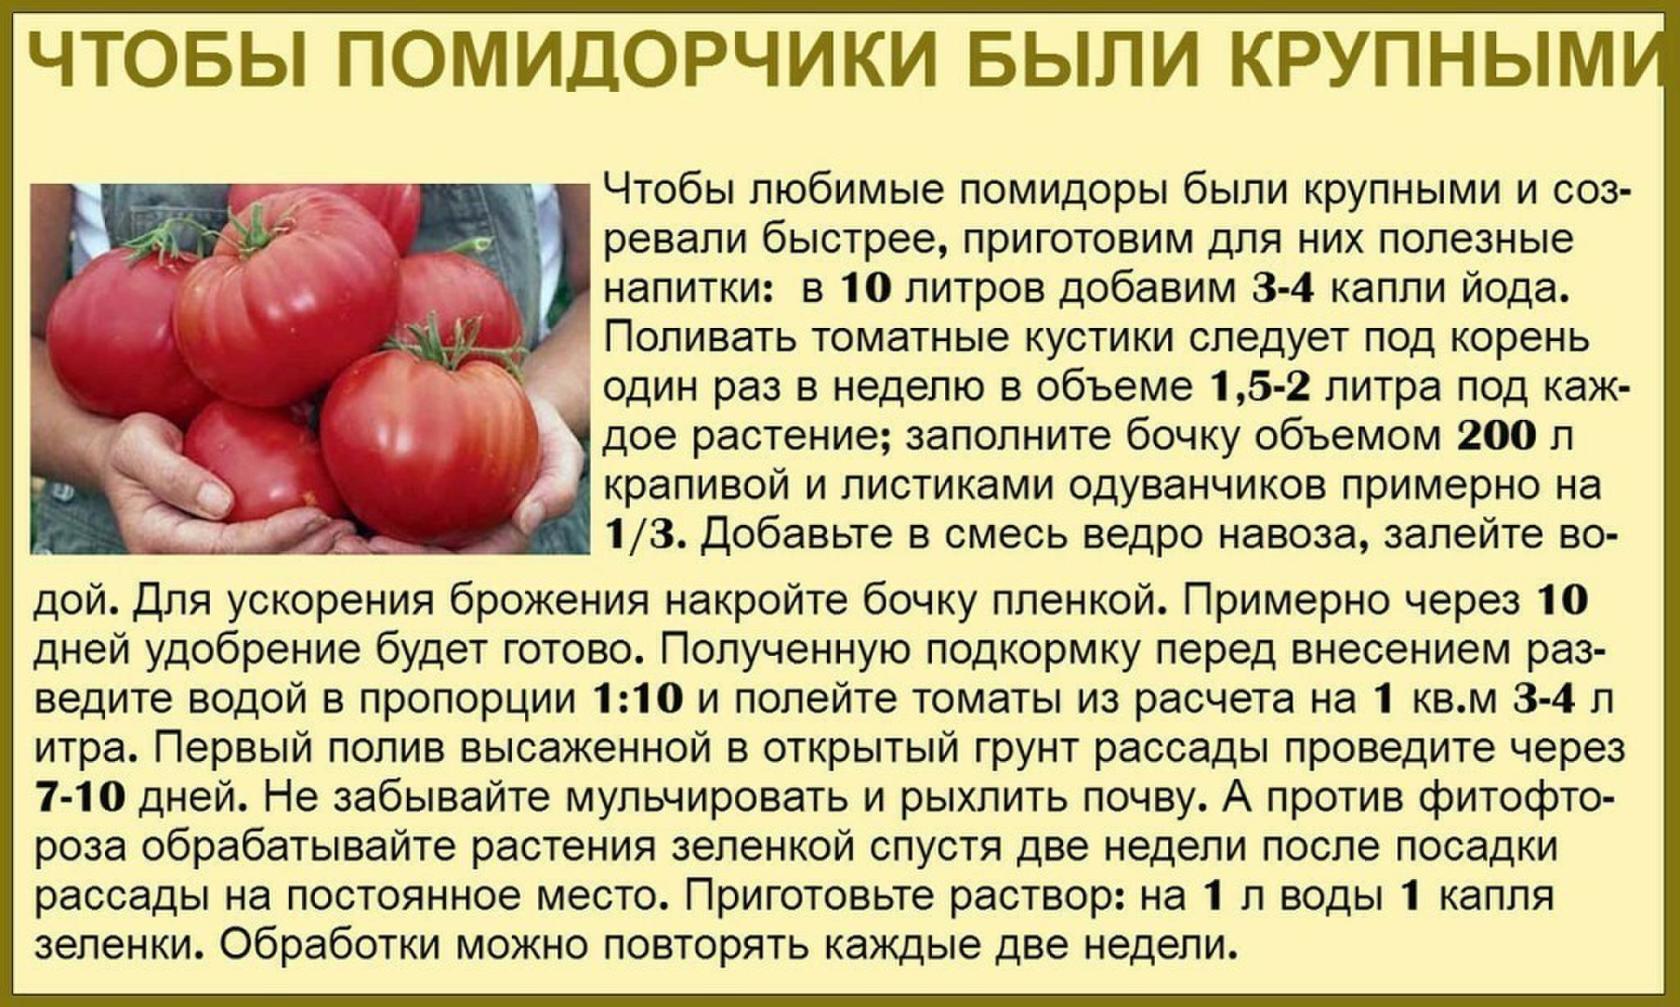 Сколько нужно поливать помидоры. Таблица подкормки томатов. Советы садоводам и огородникам. Советы про томаты. Советы для огородников.